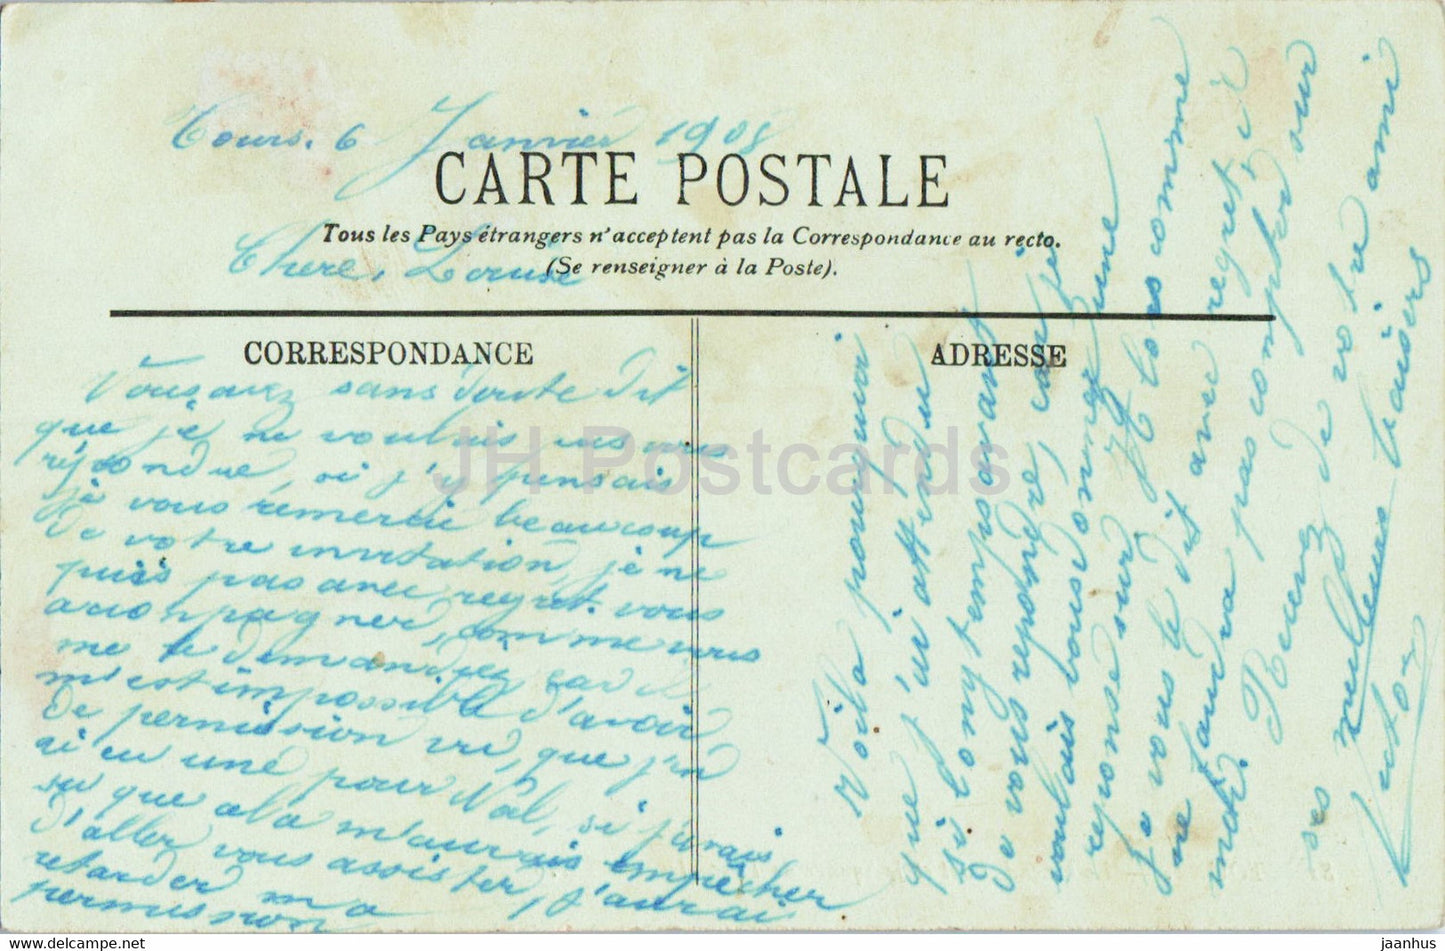 Tours - Le Grand Pont et le Square de Descartes - 81 - bridge - old postcard - 1908 - France - used